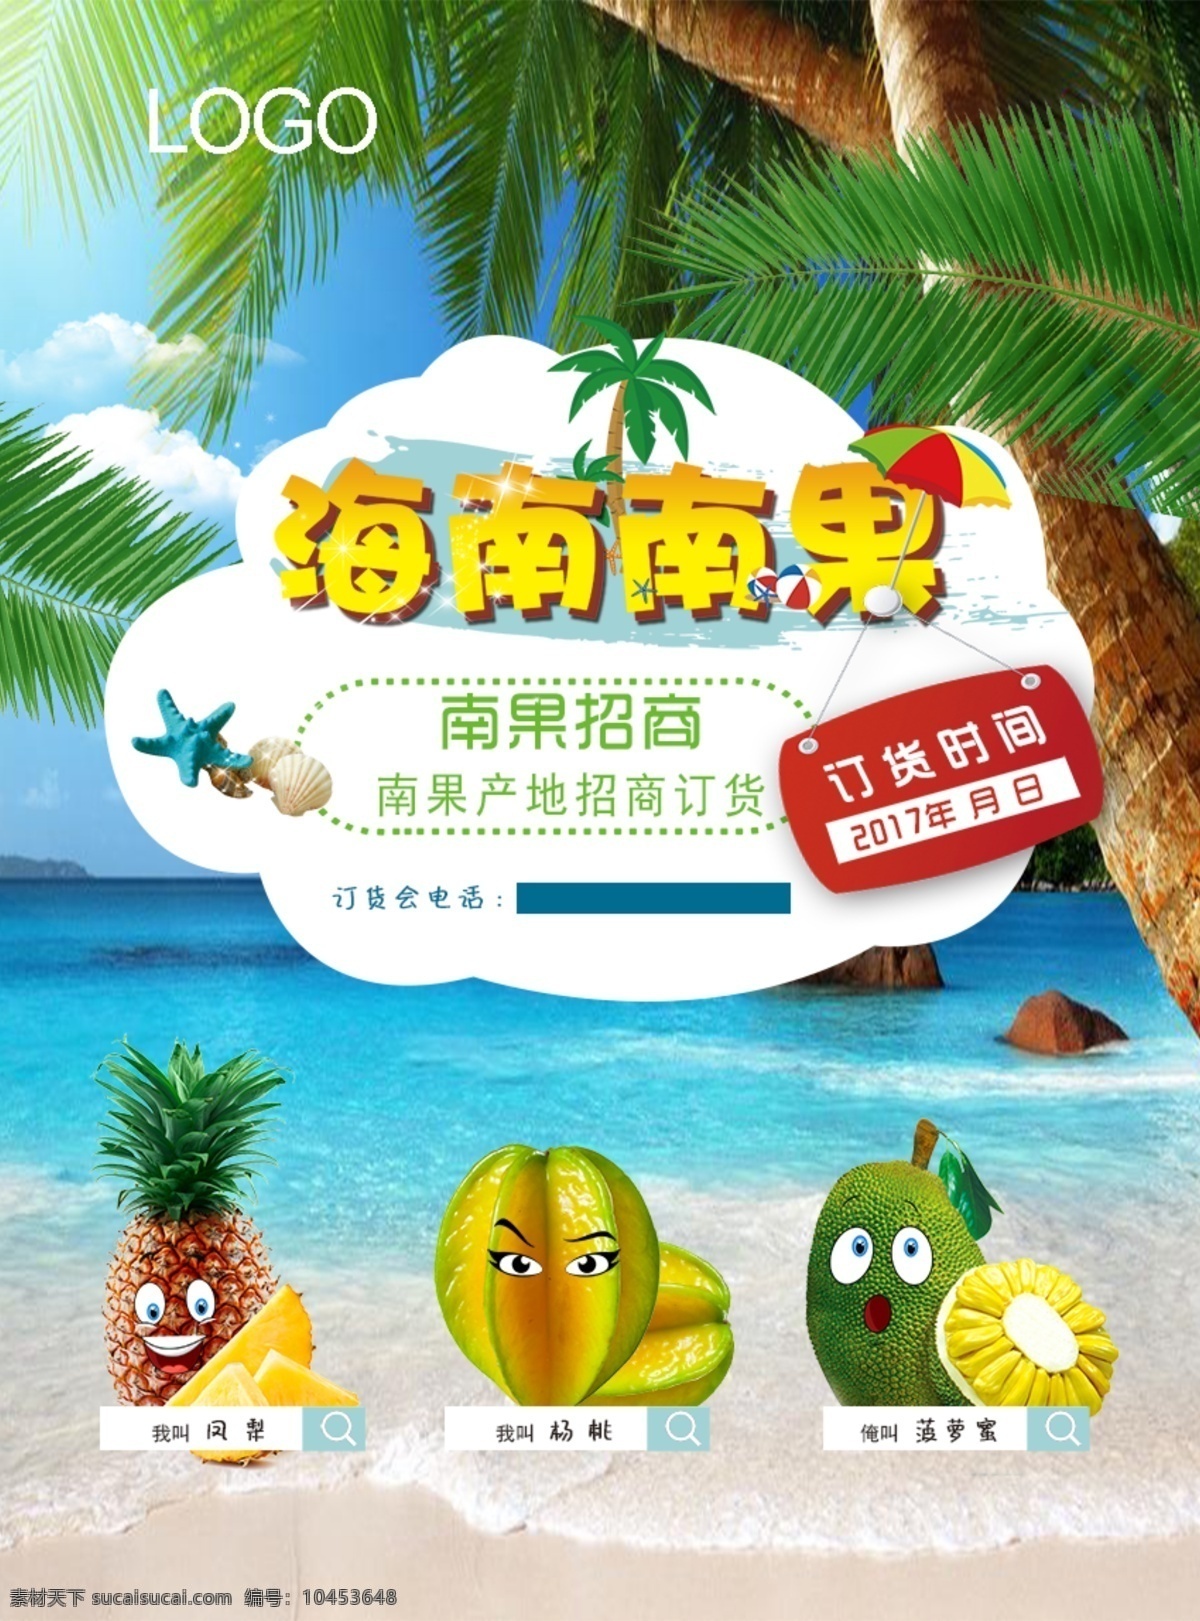 水果 宣传 宣传单 宣传页 水果宣传单 海南南果 海南 大海沙滩 椰子树